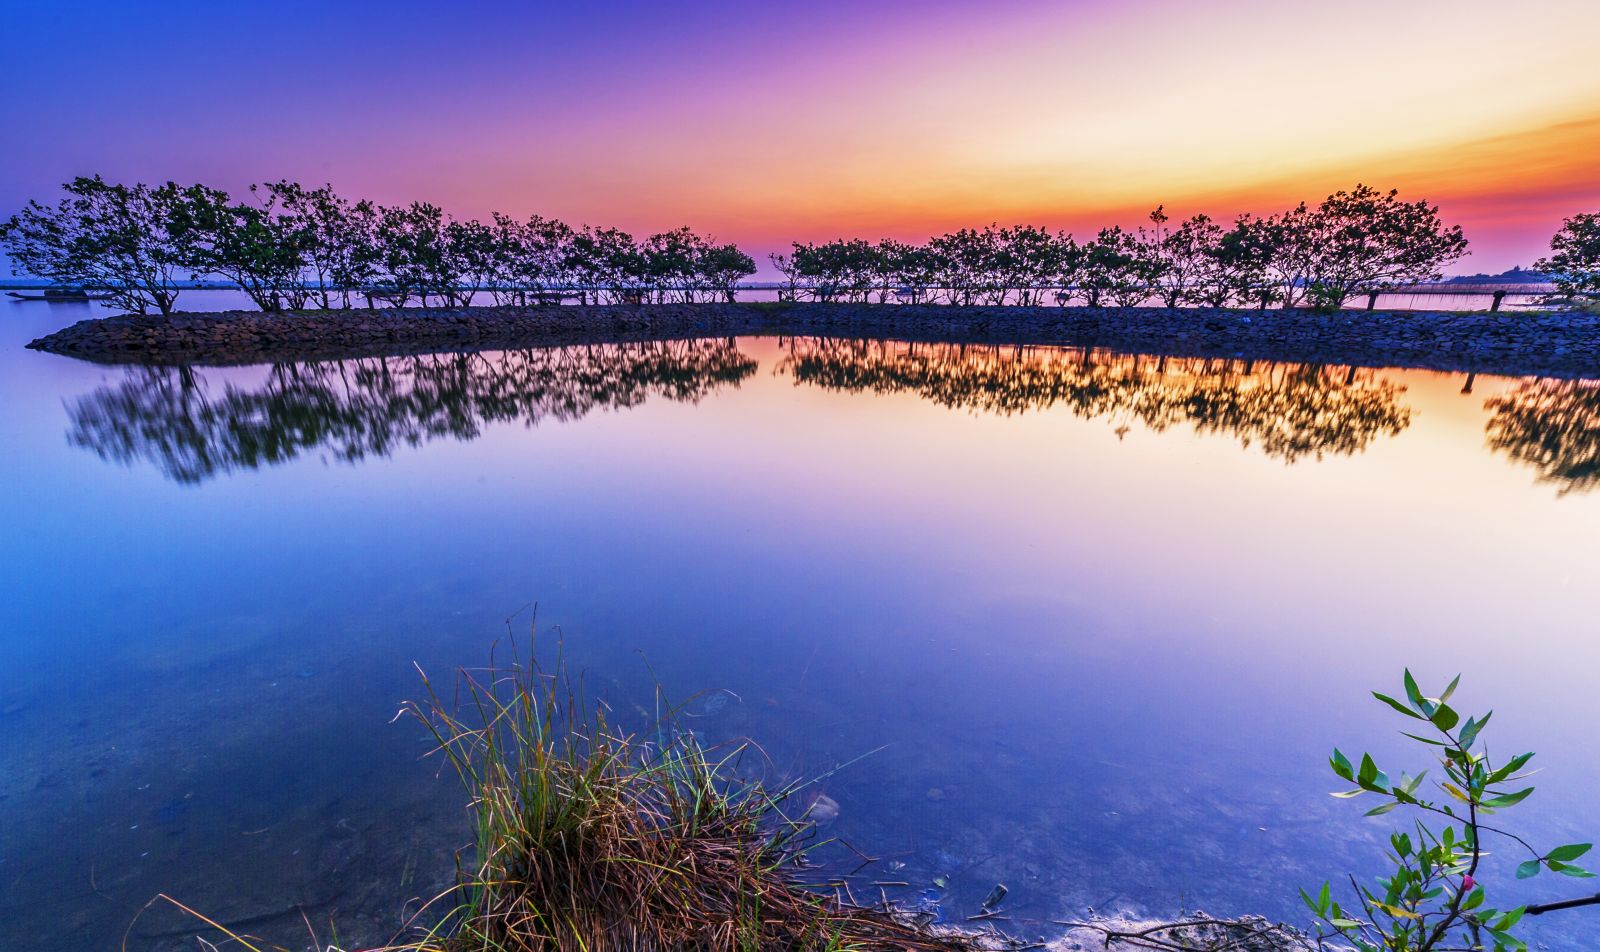 Quang Loi Lagoon at dawn